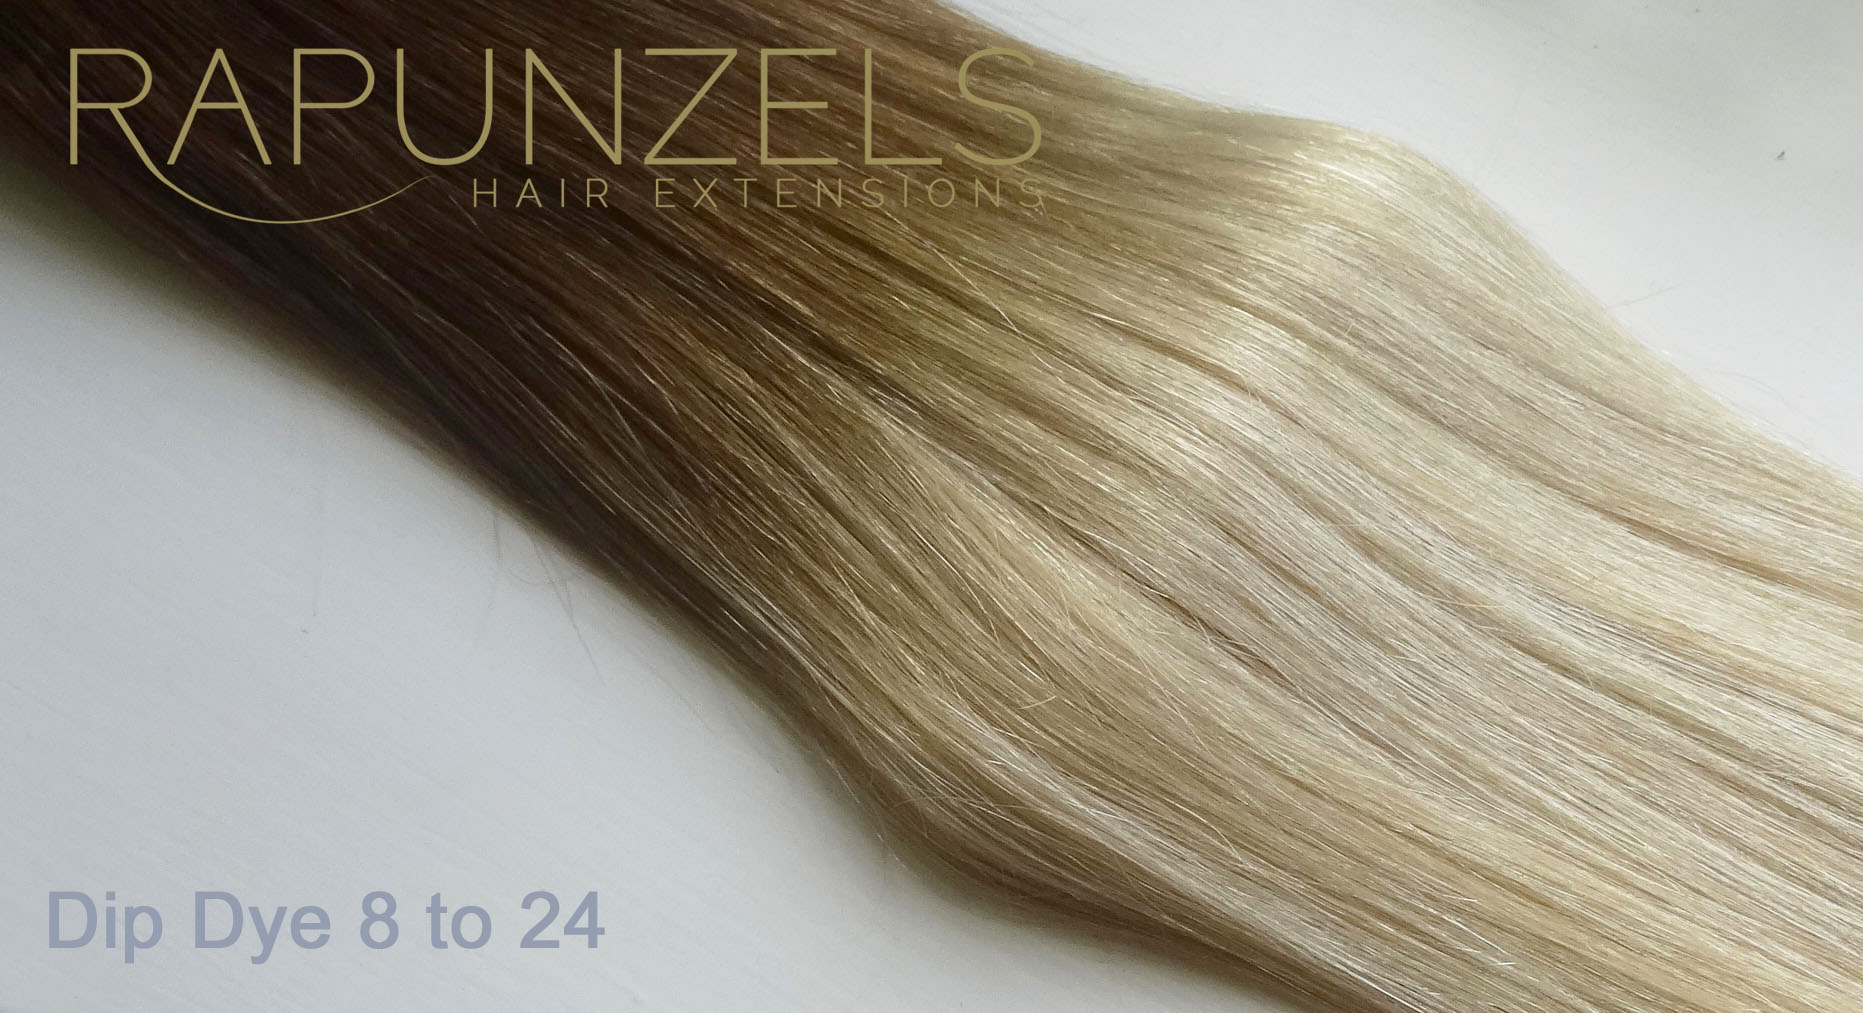 Colour Match Rapunzels Hairextensions